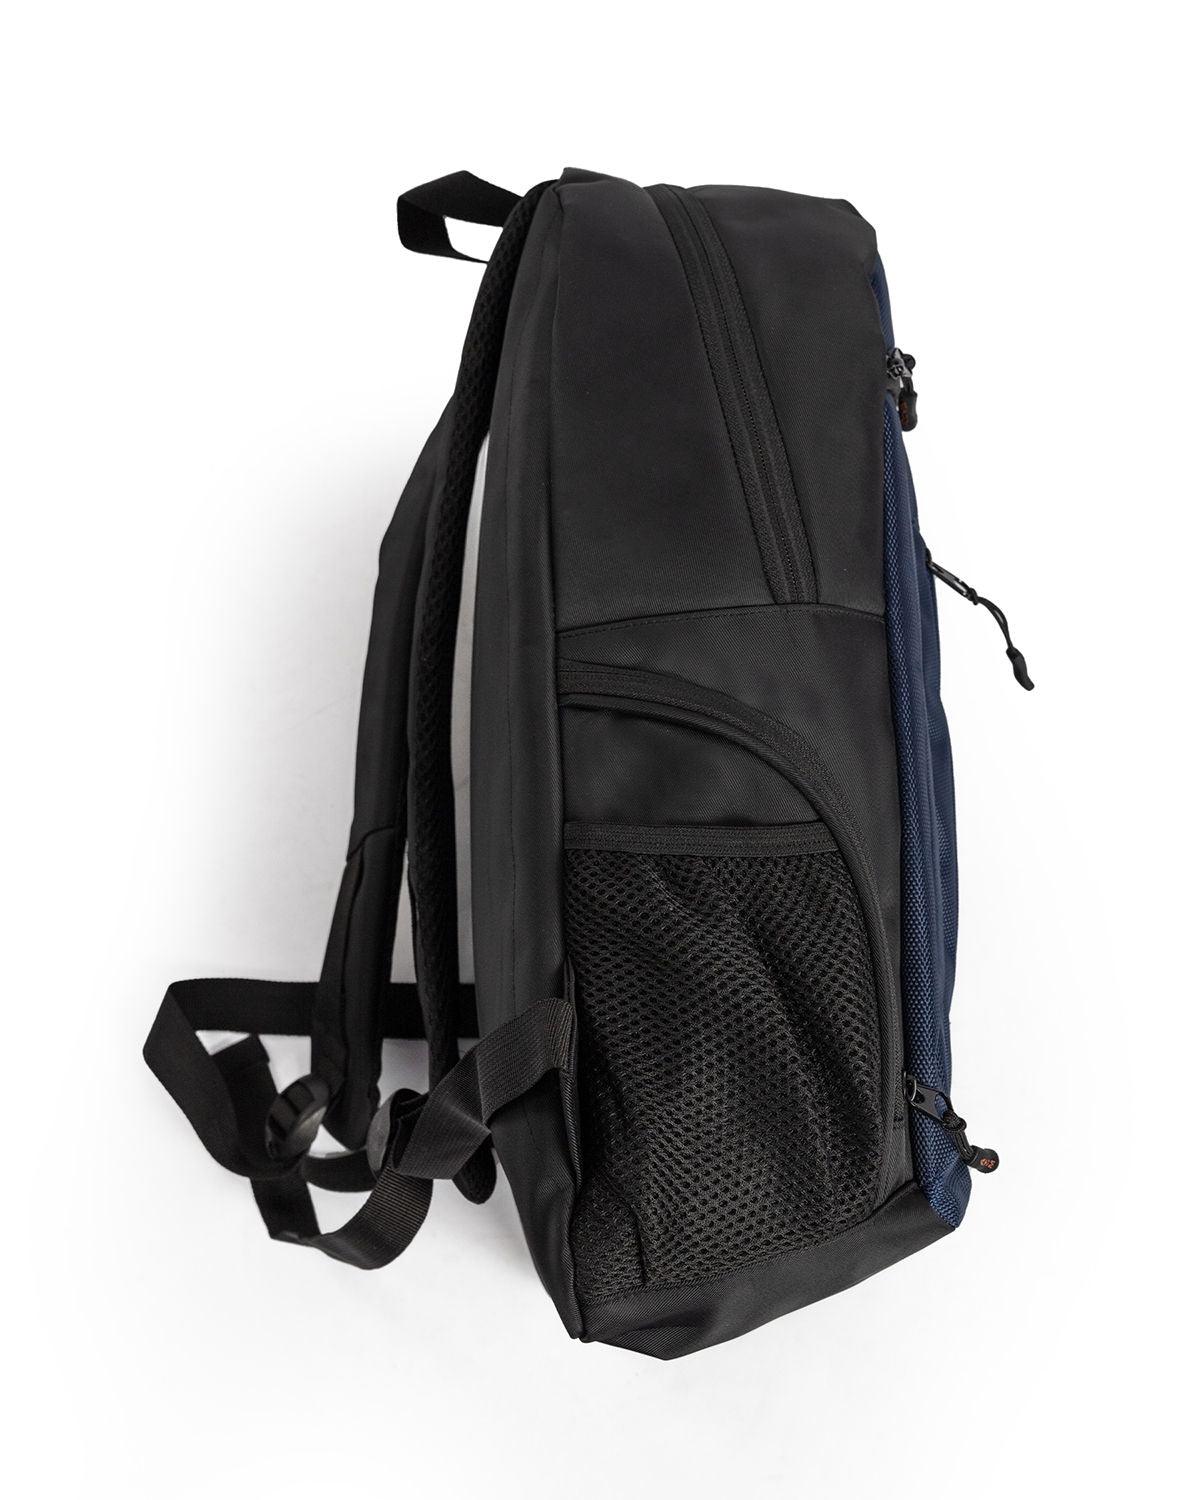 Atum's premium backpack - Atum Egypt #